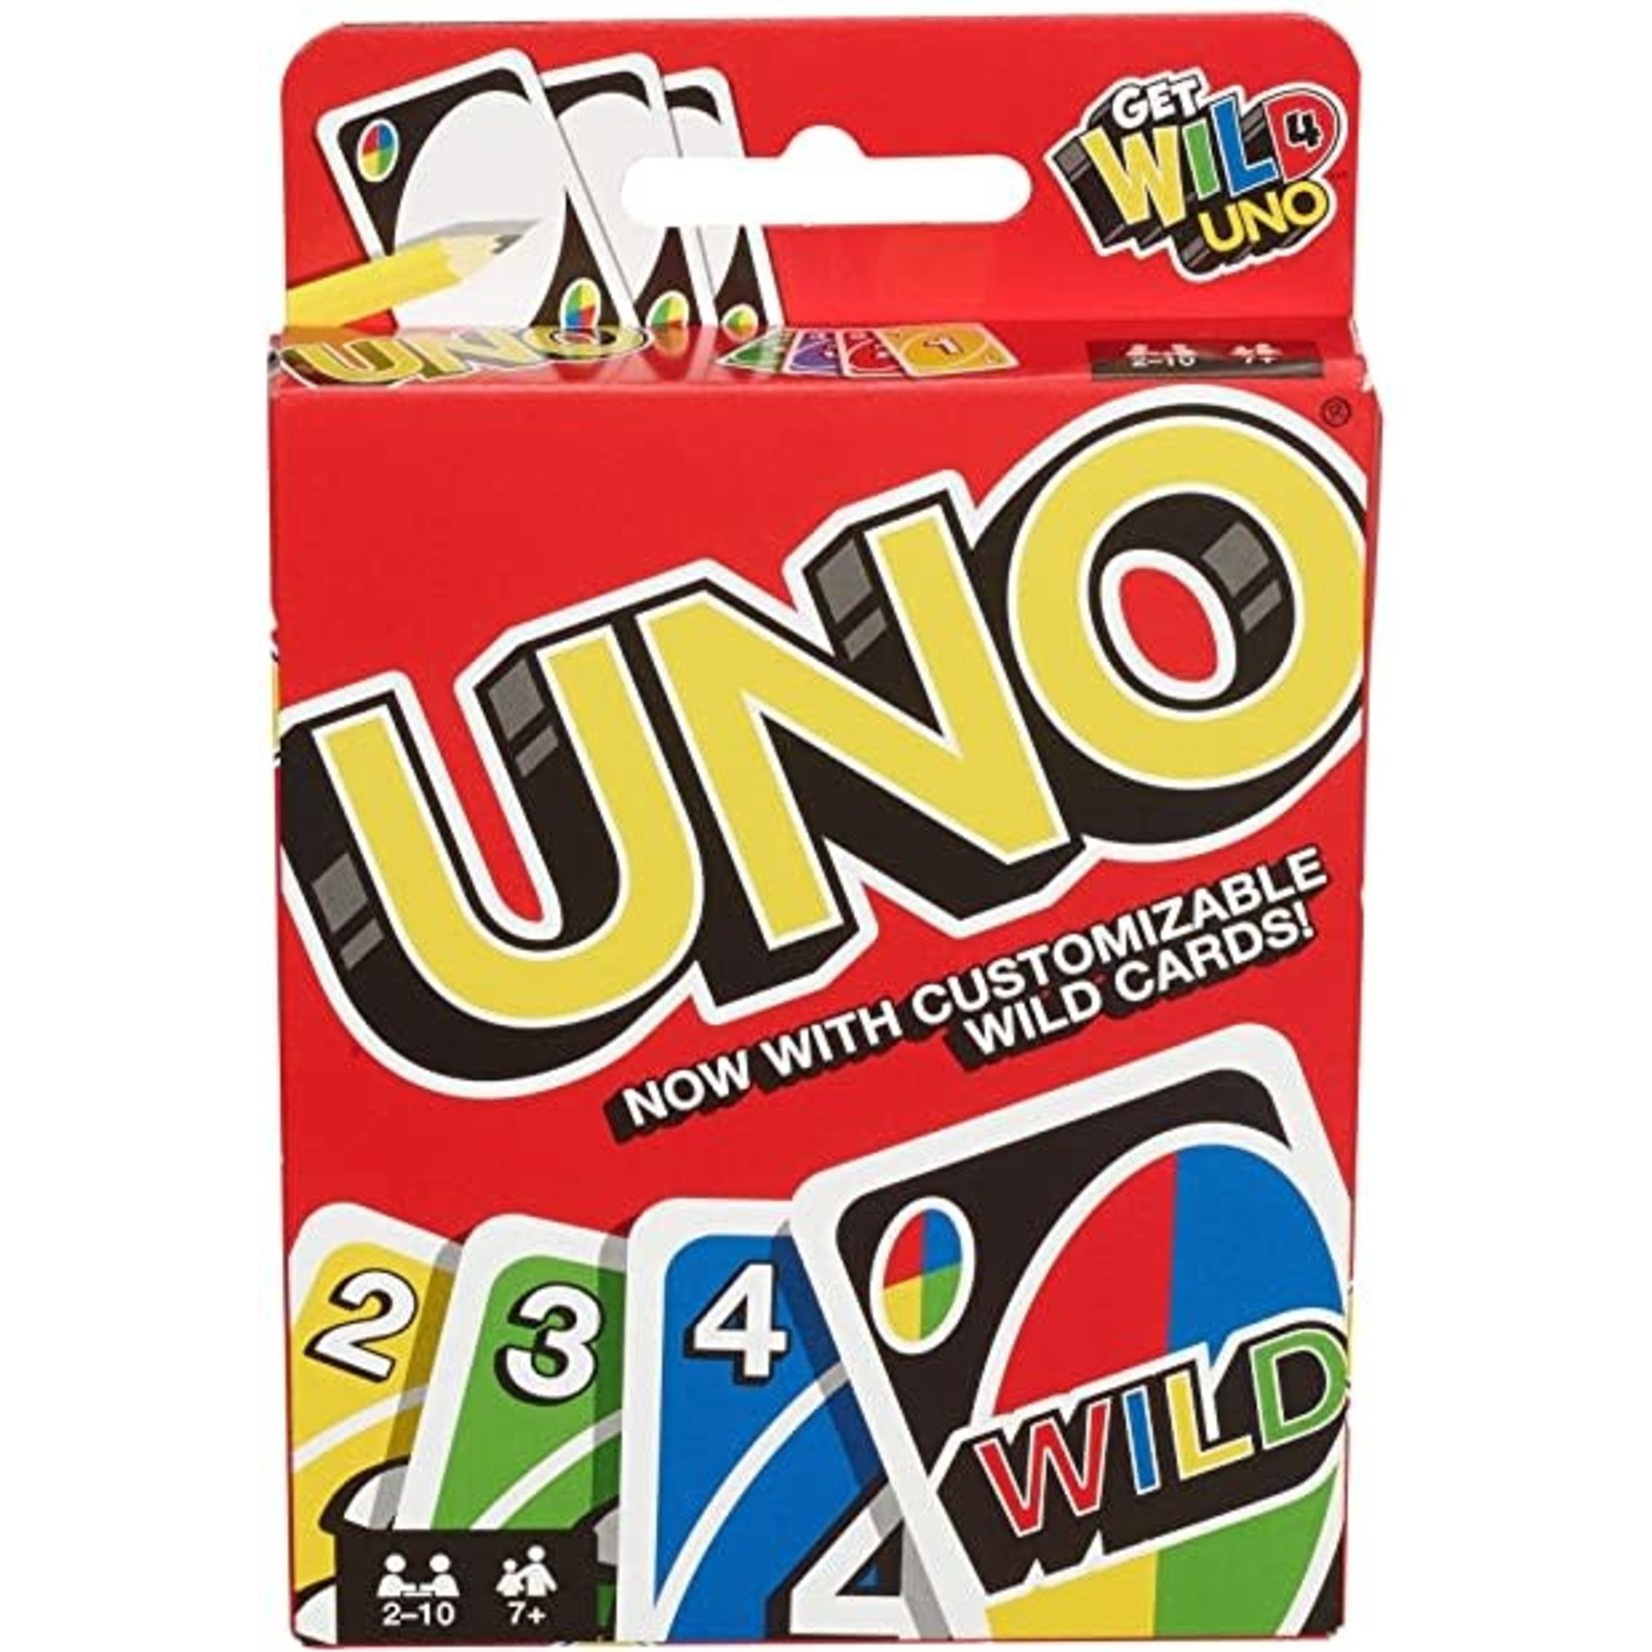 Mattel Uno